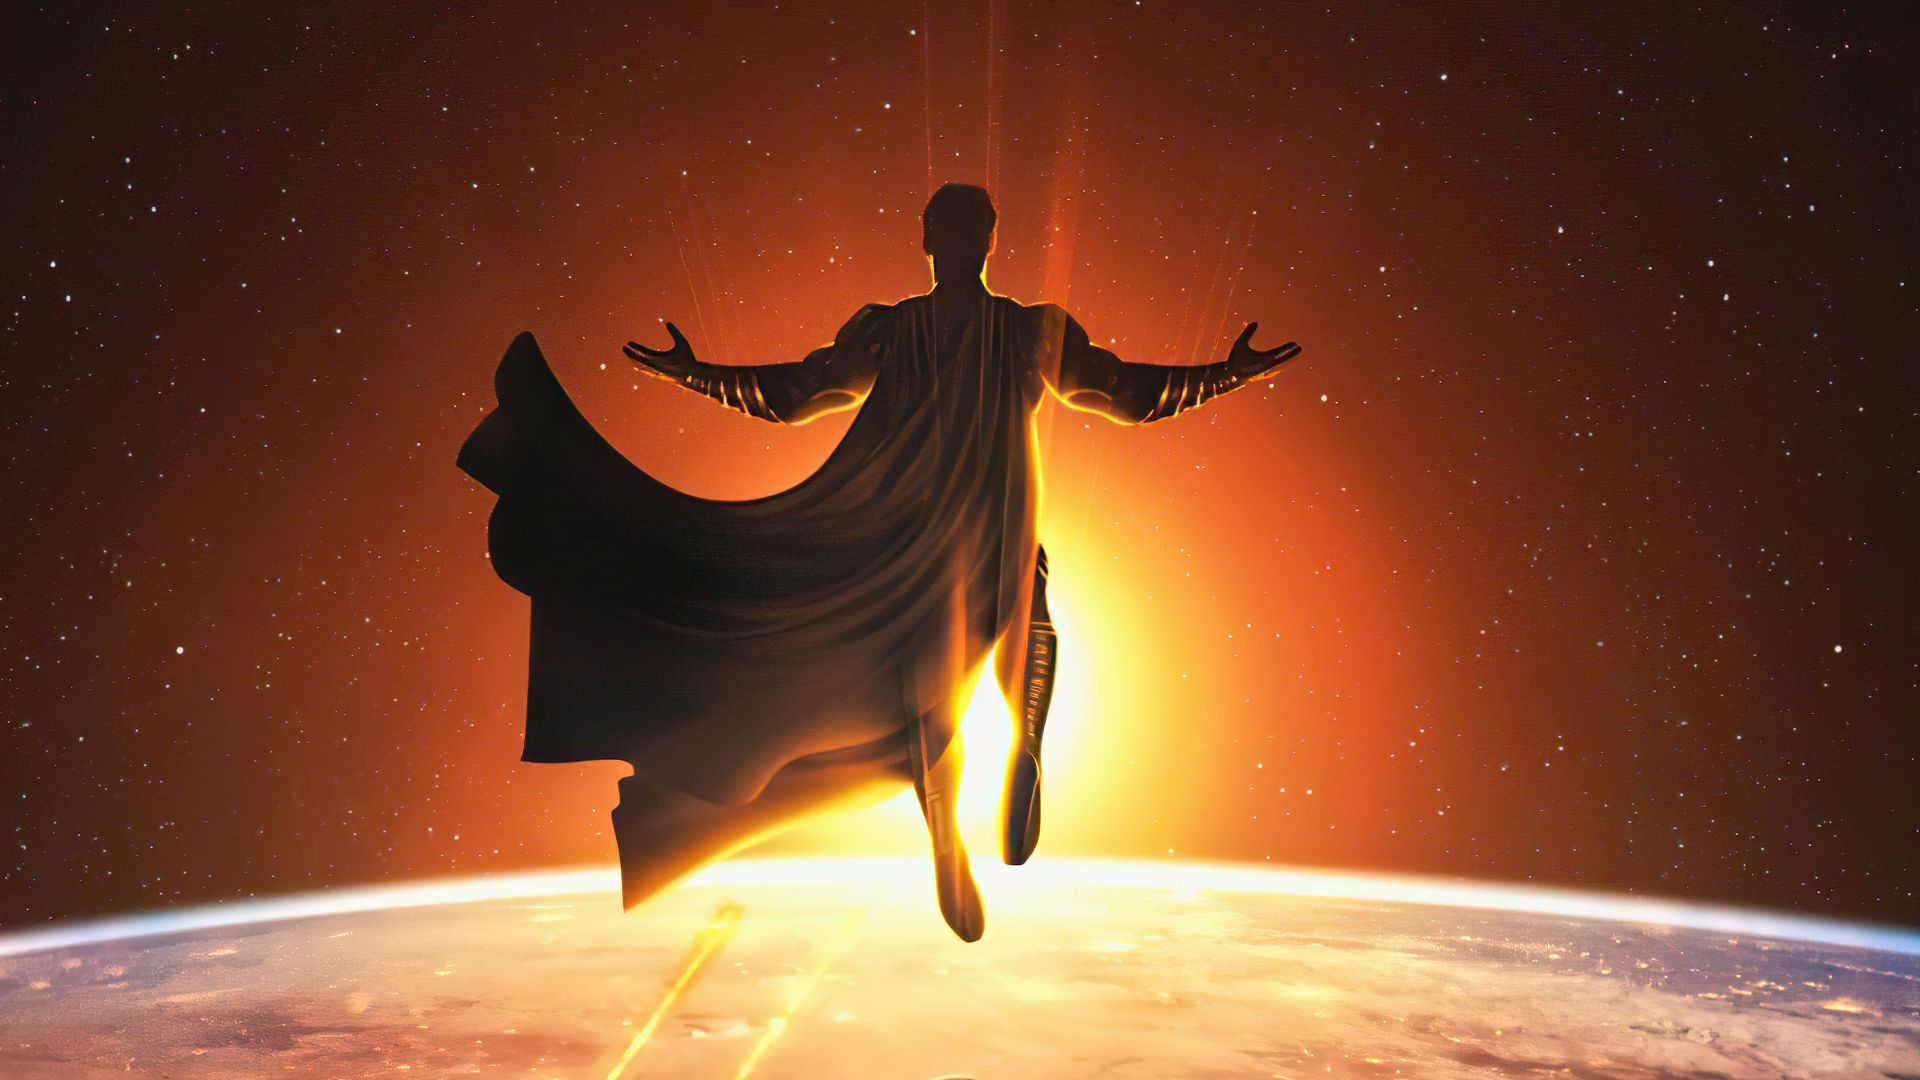 Desktop Wallpaper Superman In Space, Fan Art, 2021, Hd Image, Picture